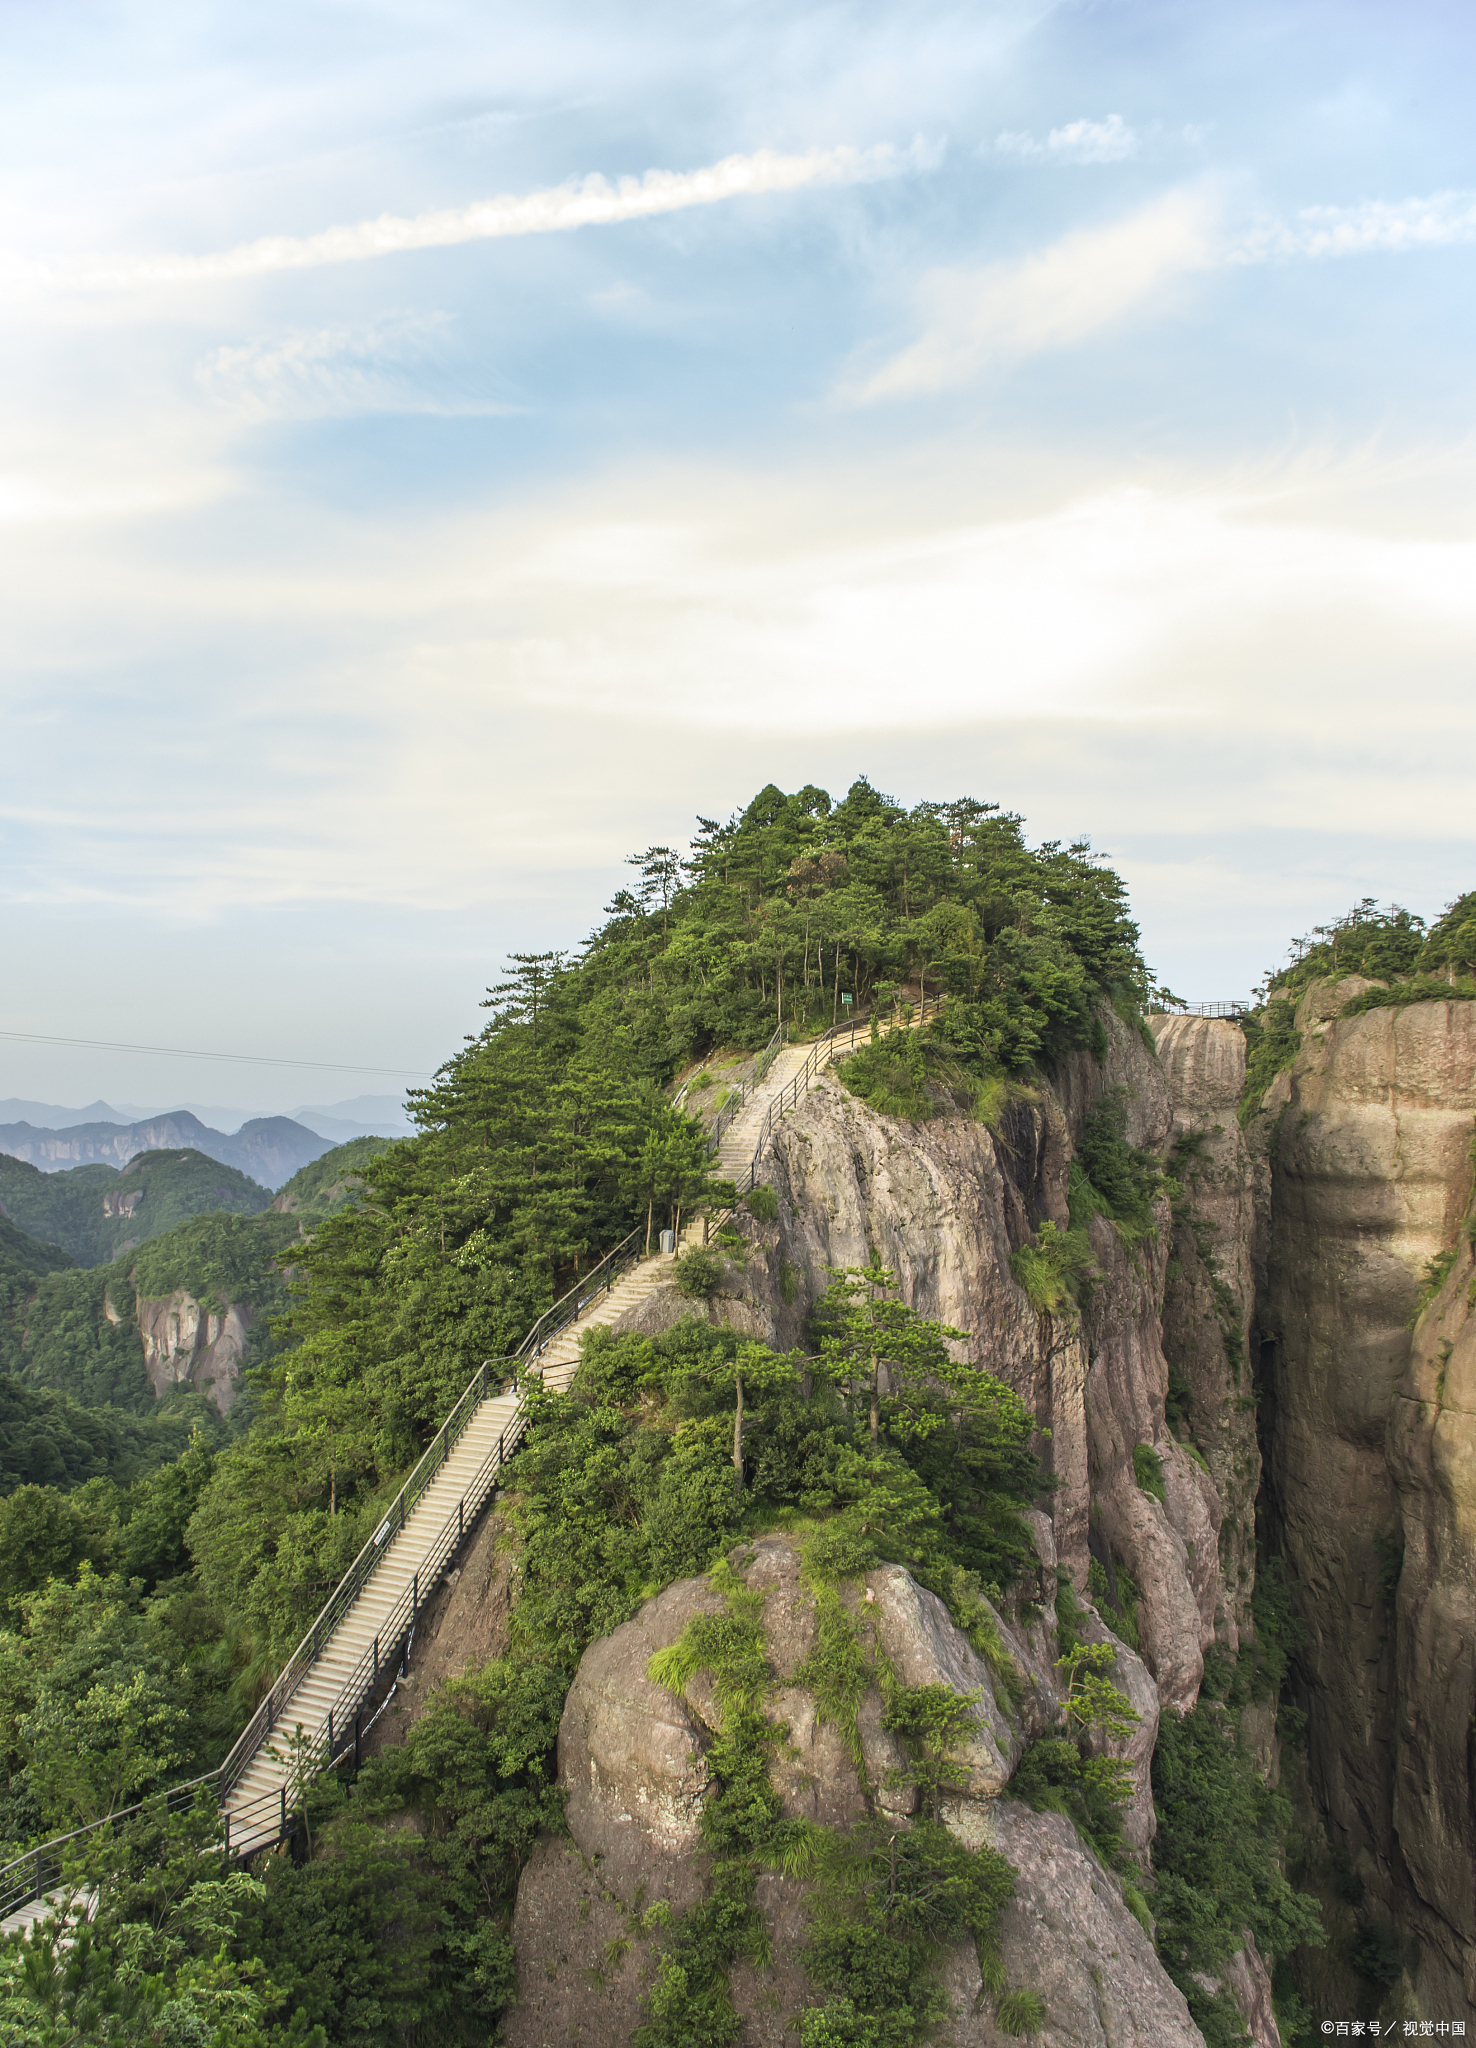 乐清市,被誉为东南第一山,是一个融合了自然风光和人文景观的旅游